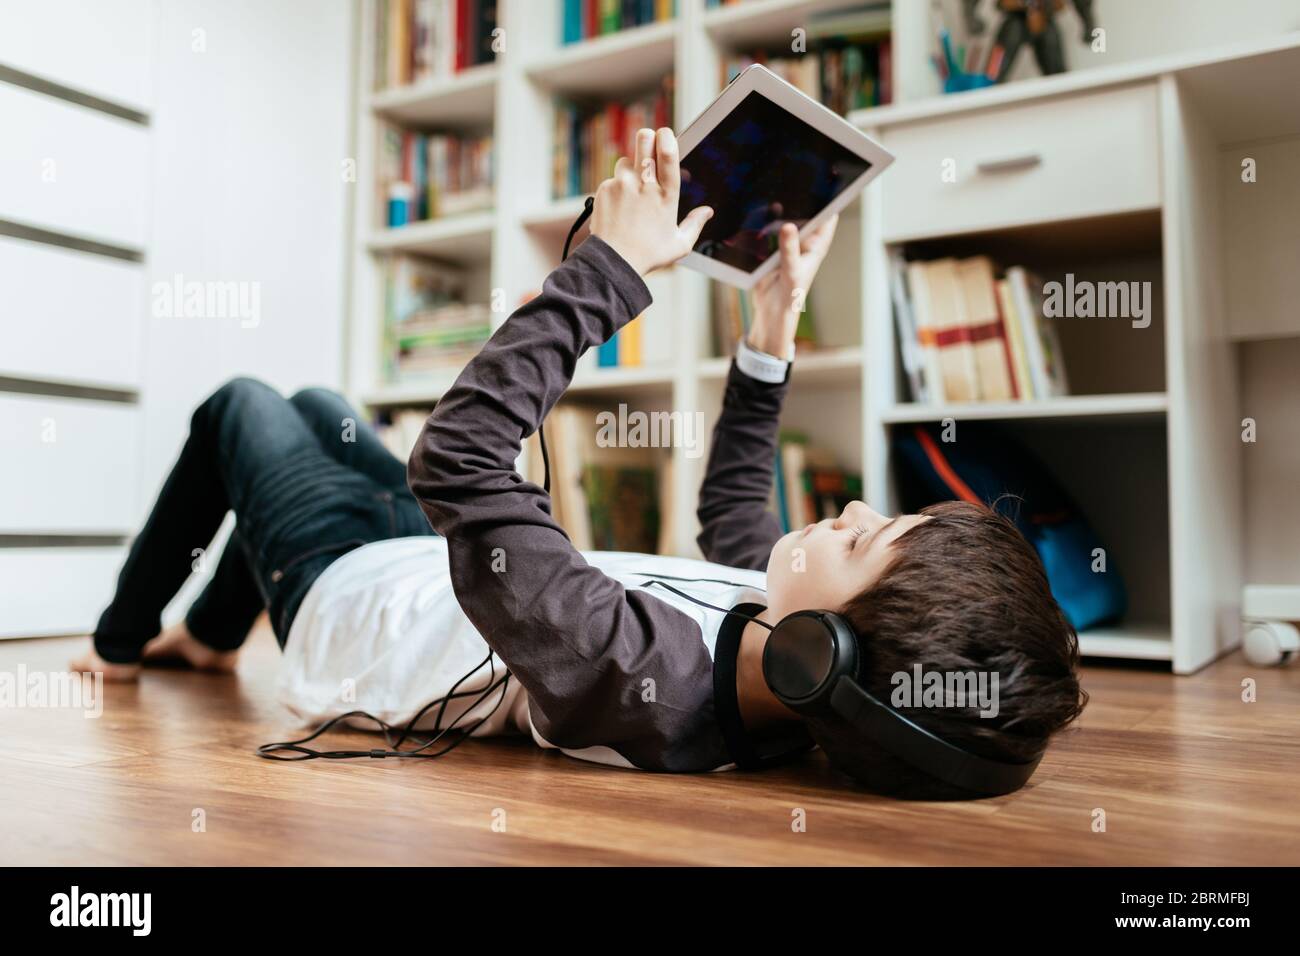 Teenager-Junge trägt Kopfhörer auf dem Boden liegen Spiel auf Tablet zu Hause spielen. Junge entspannen durch Online-Spiel auf digitalen Tablet. Stockfoto